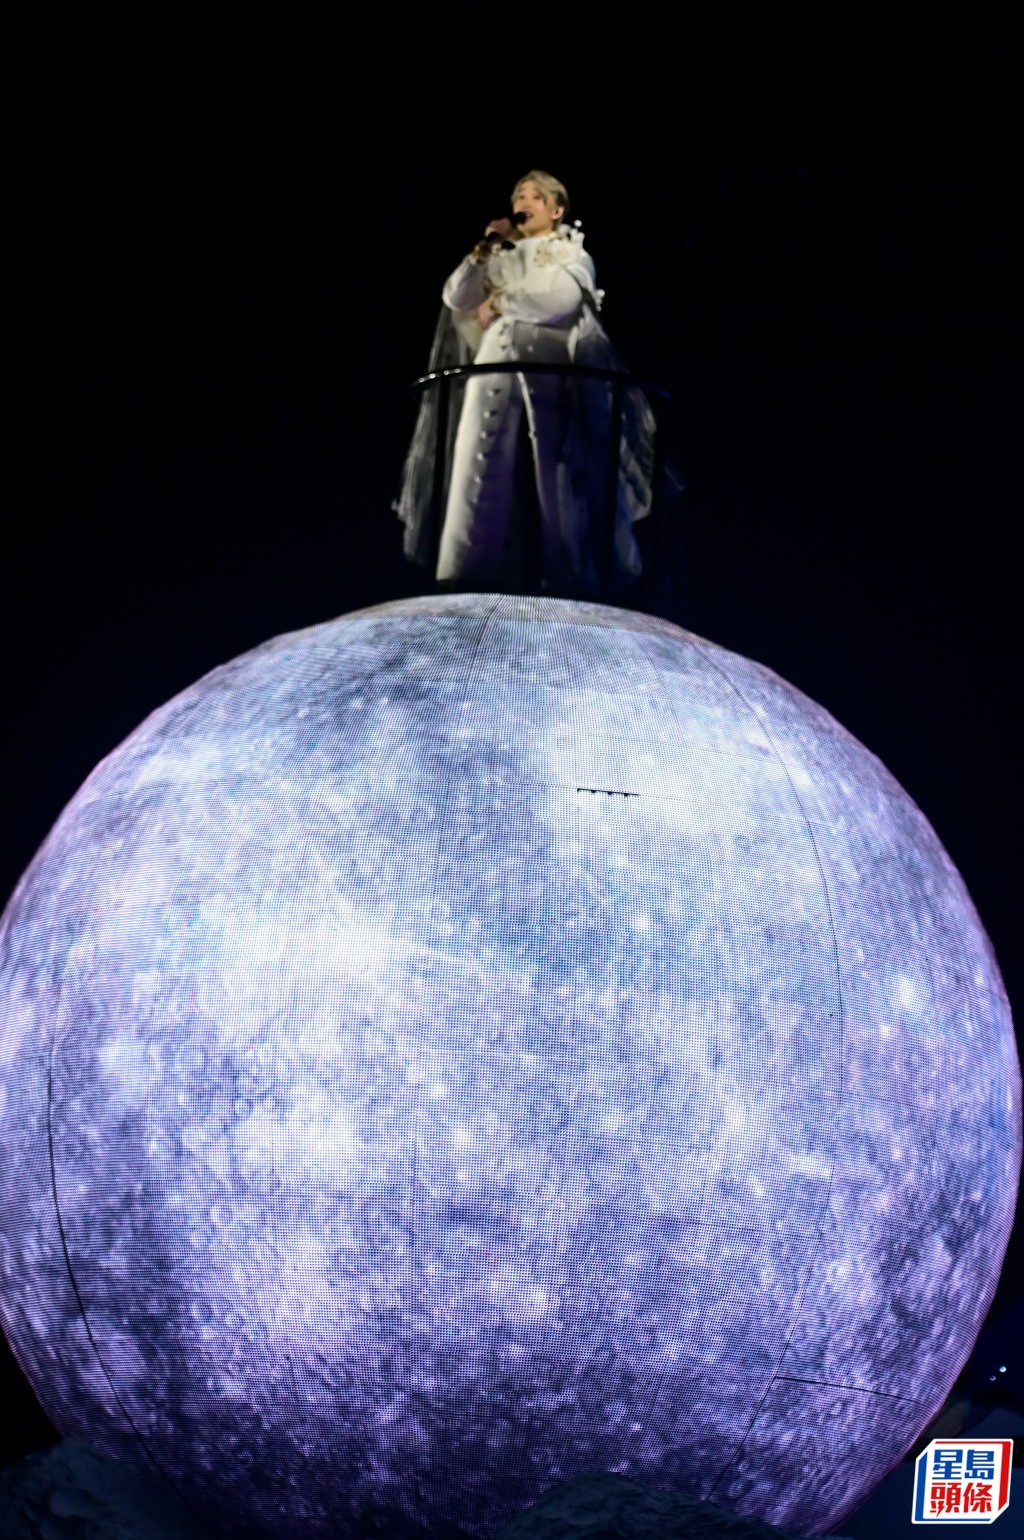 自稱是小王子後就走到台側的「月球」上演唱。